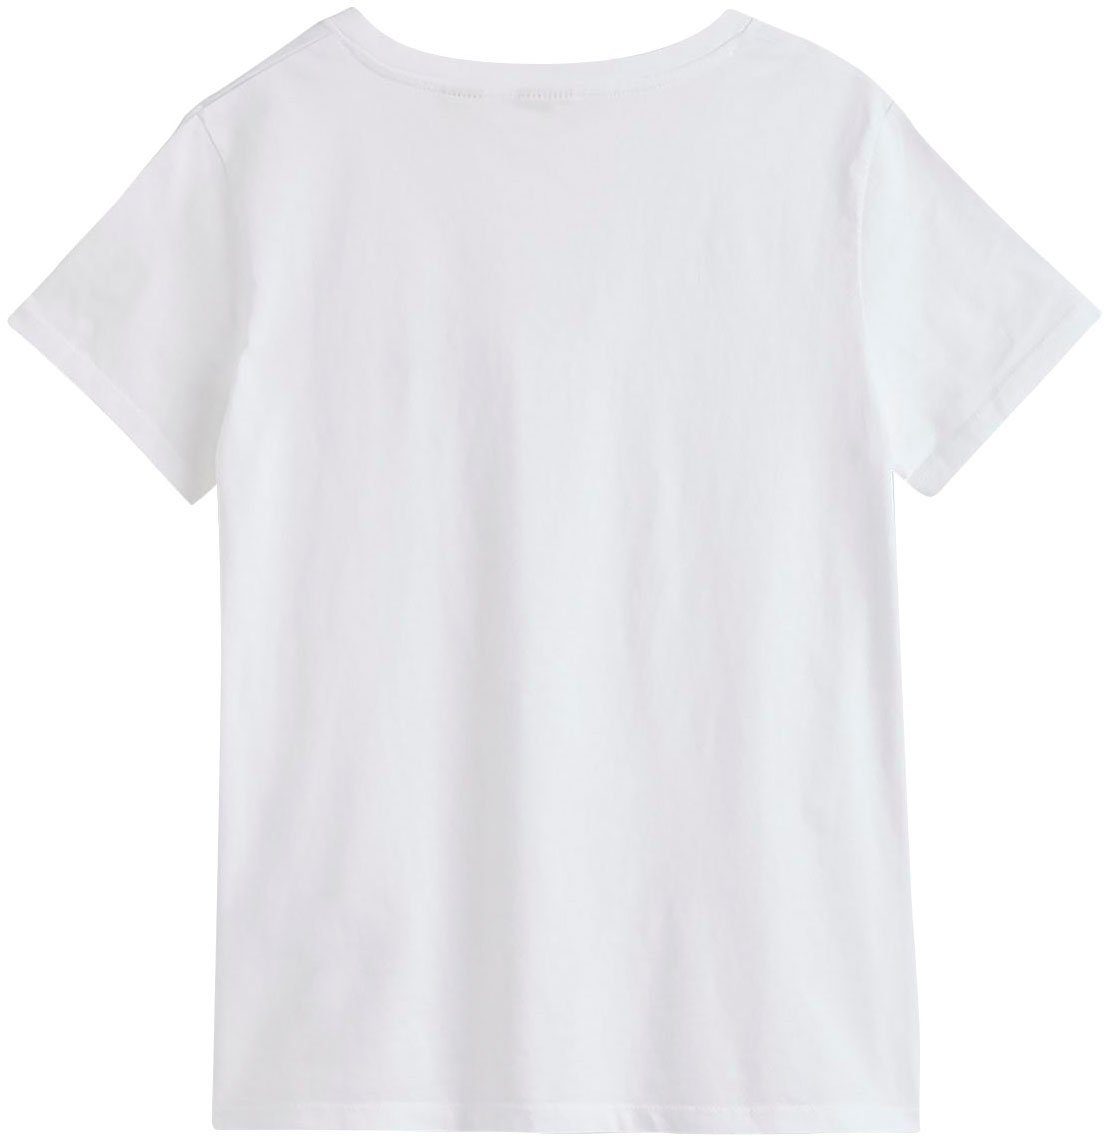 Levi's® T-Shirt schwarz, weiß